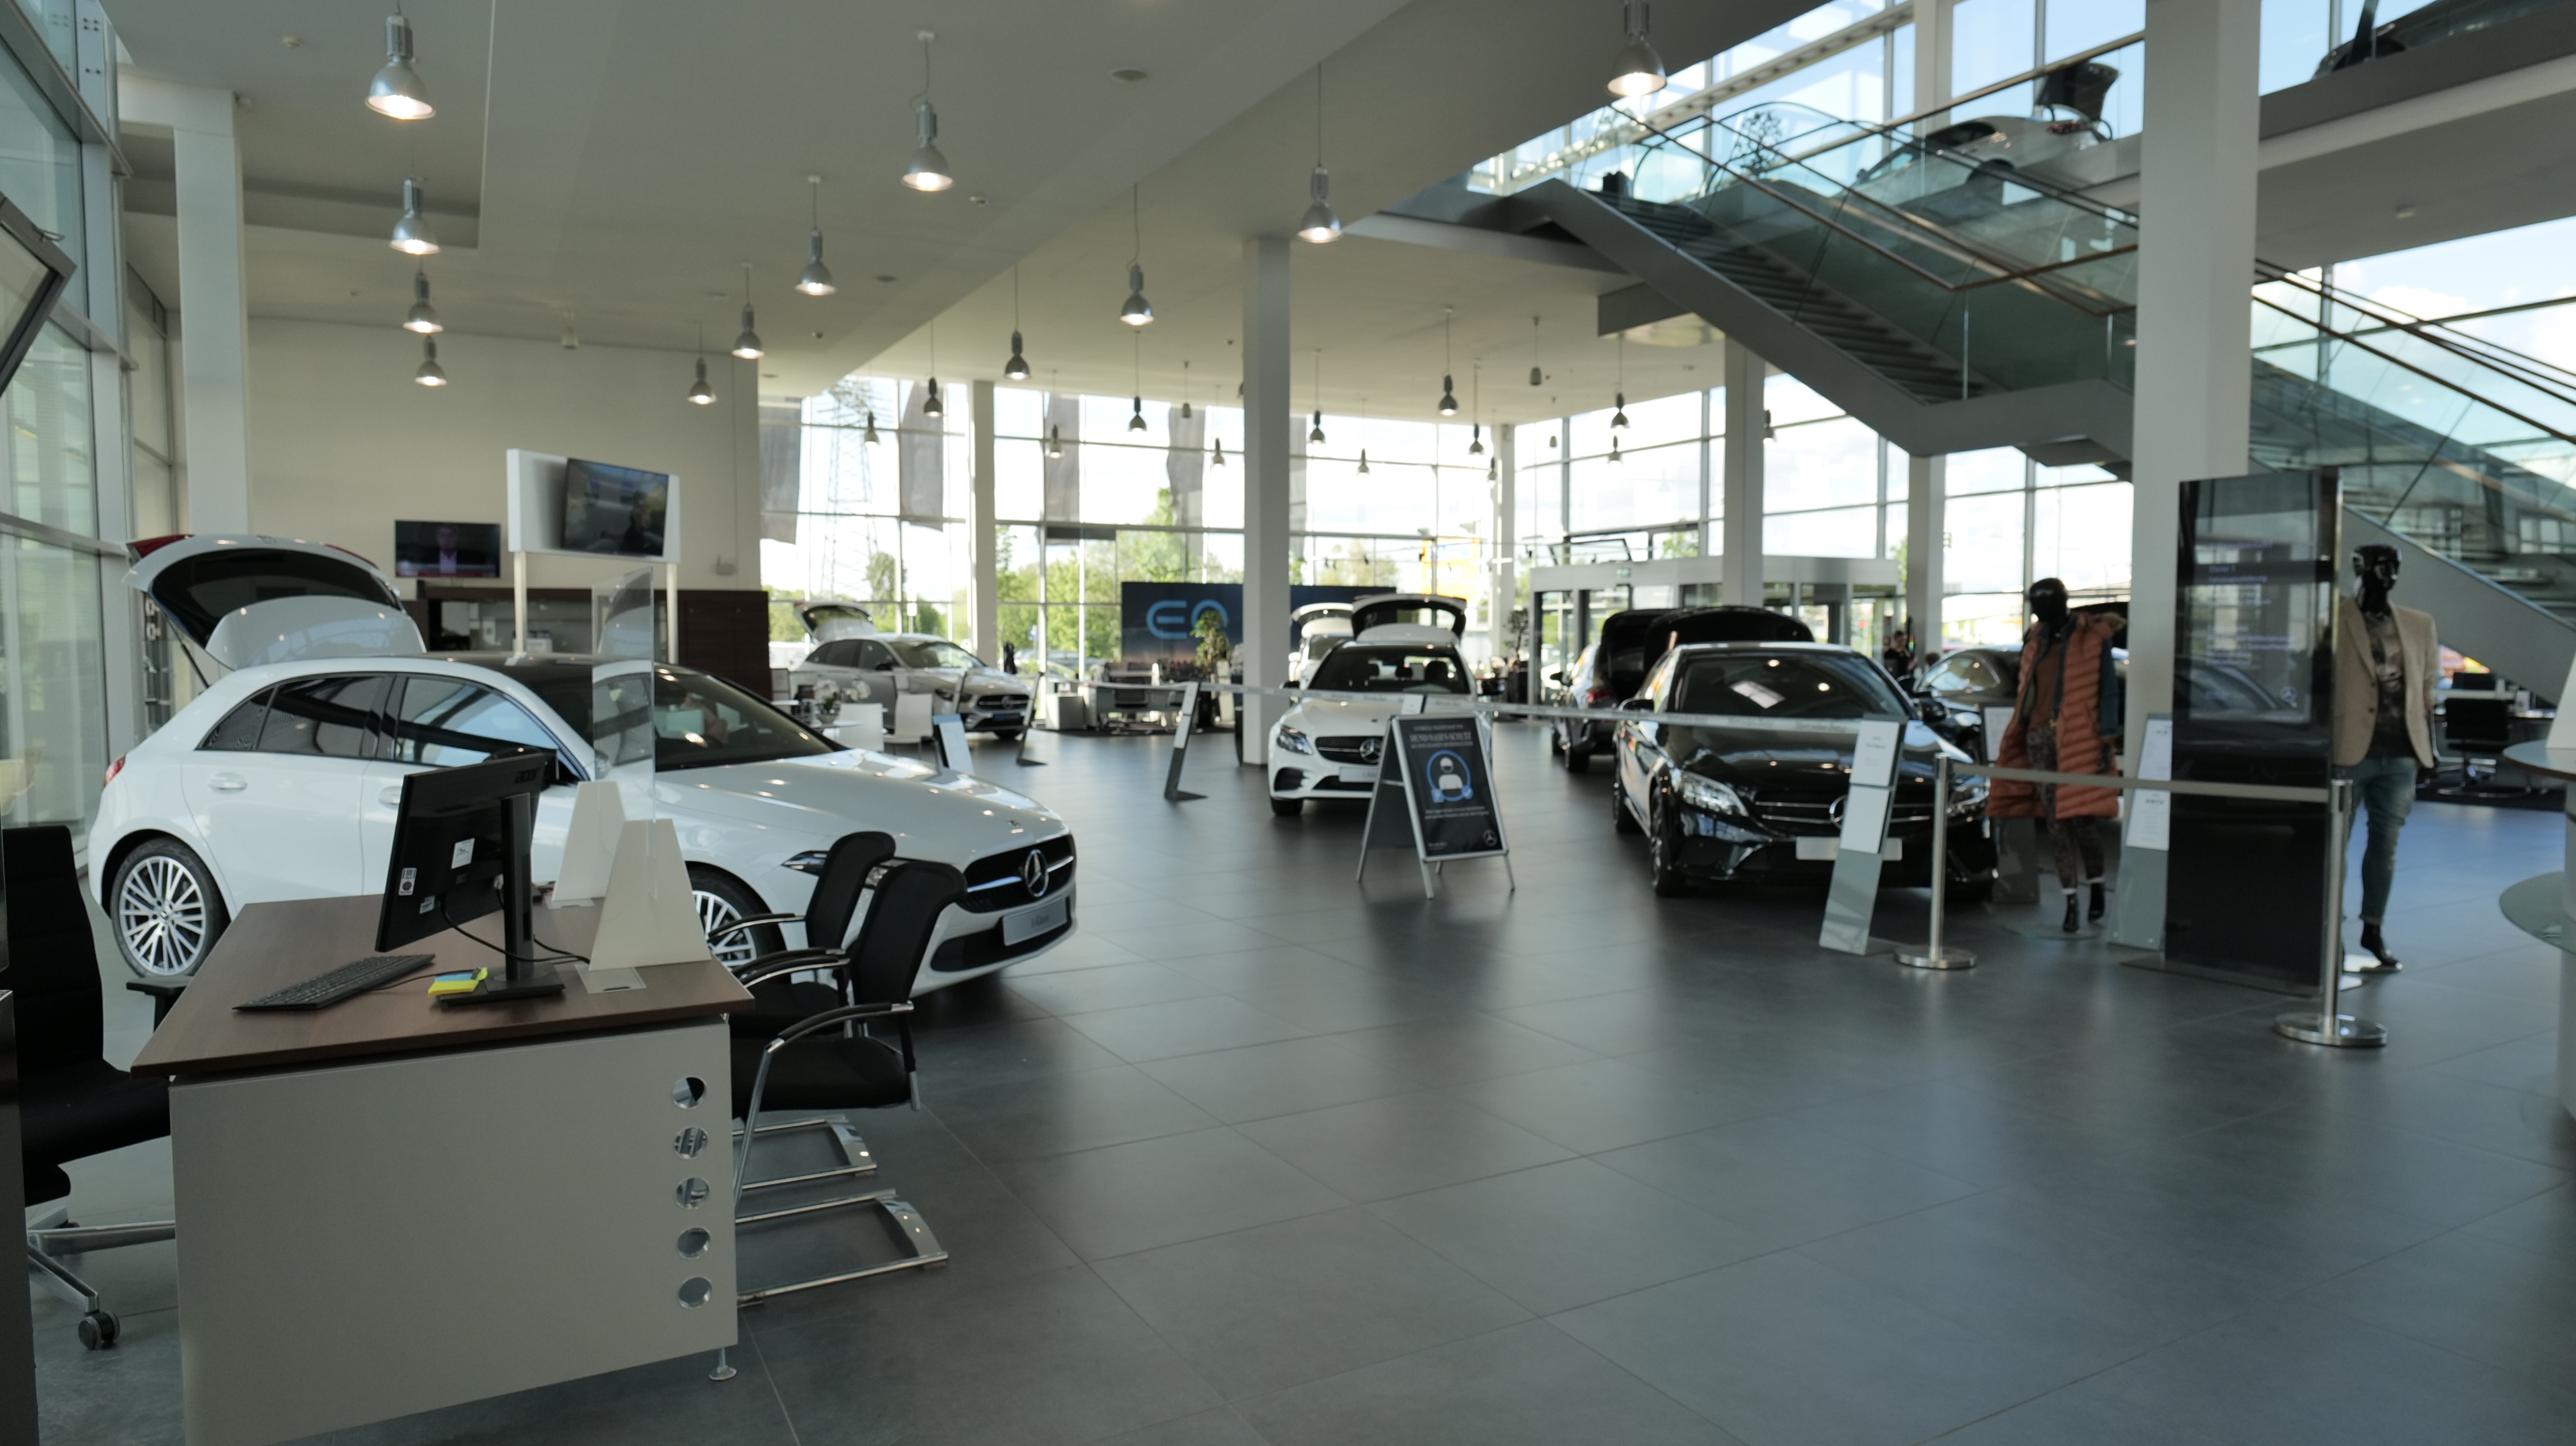 Mercedes-Benz PKW Verkauf, Hans-Grade-Allee 61 in Schönefeld